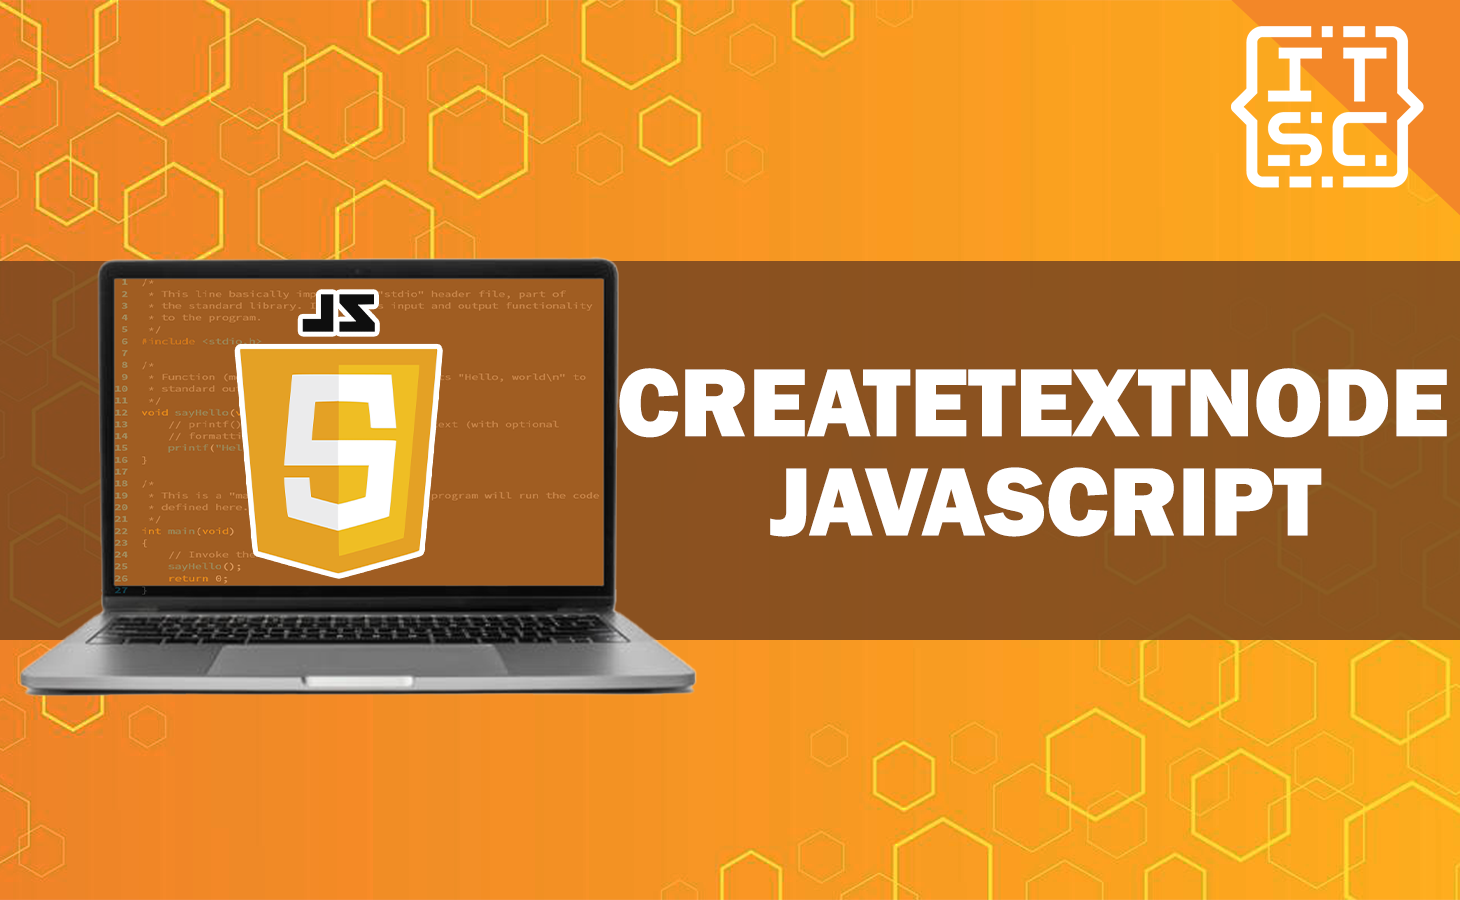 CreateTextNode JavaScript